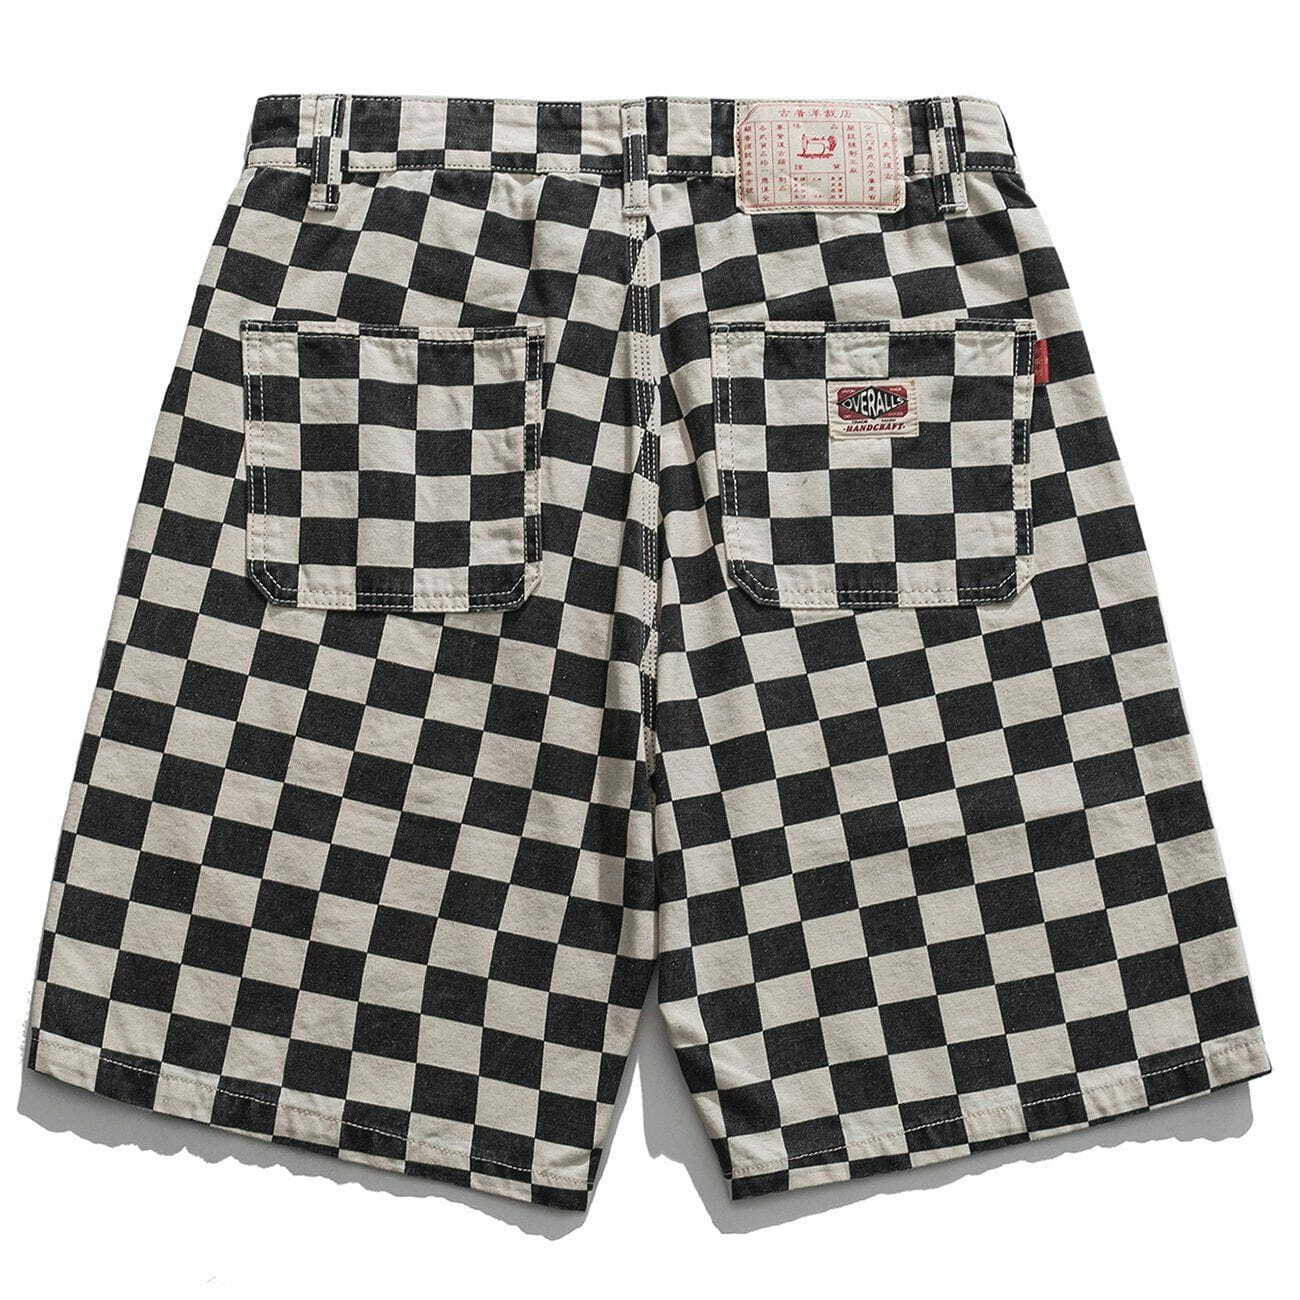 lattice cargo shorts edgy streetwear essential 8340